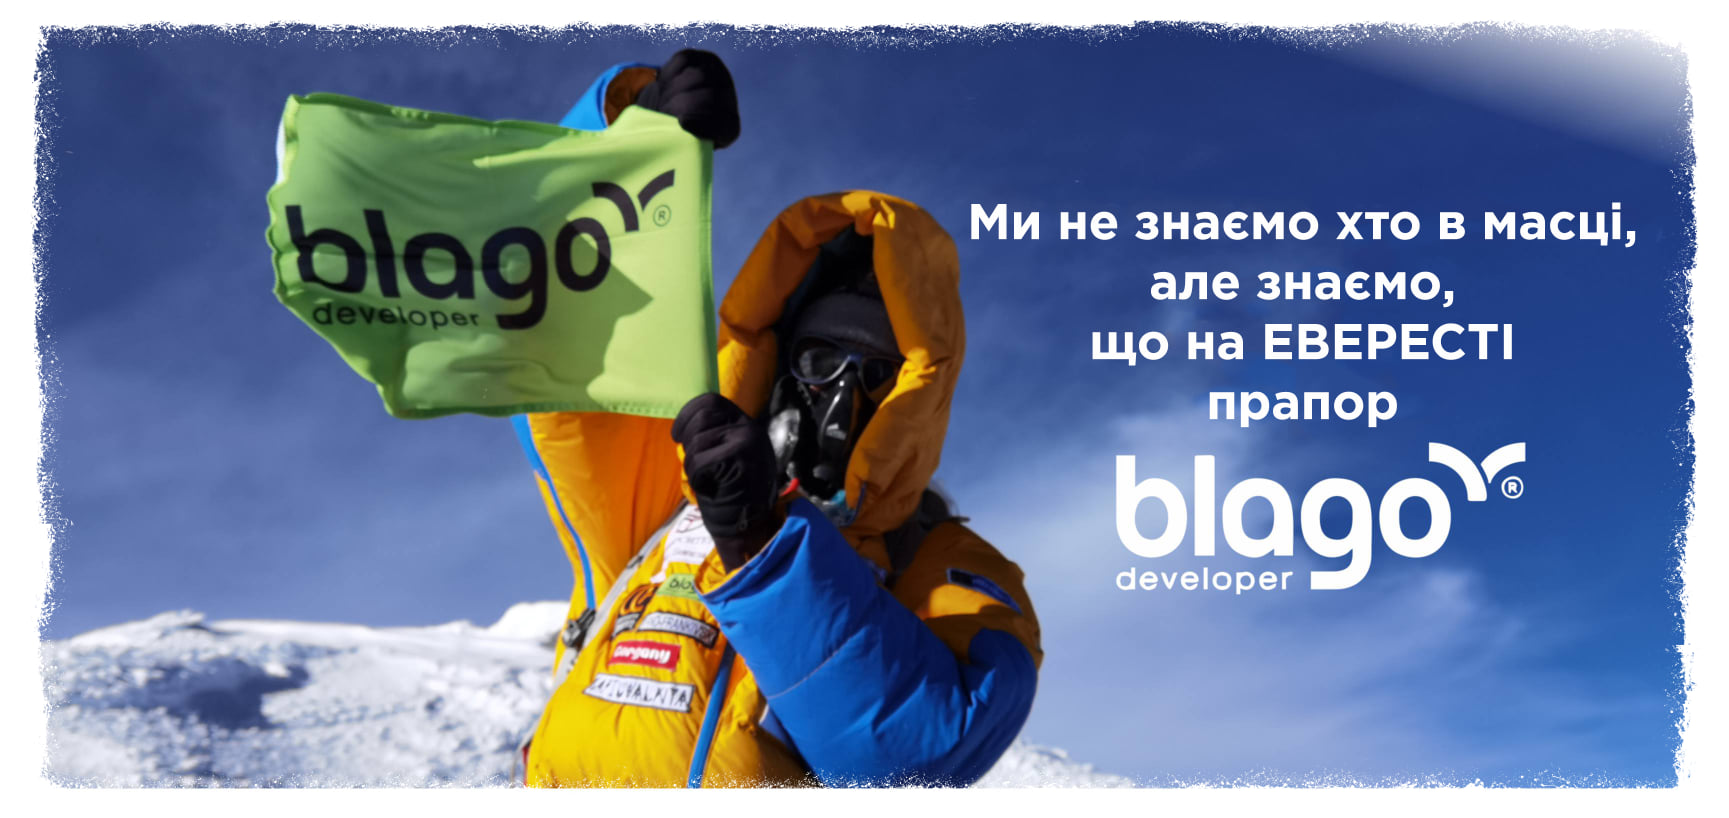 “Зійшла! Не зійшла!”: користувачі мережі створюють меми про Мохнацьку та Еверест (ФОТО)